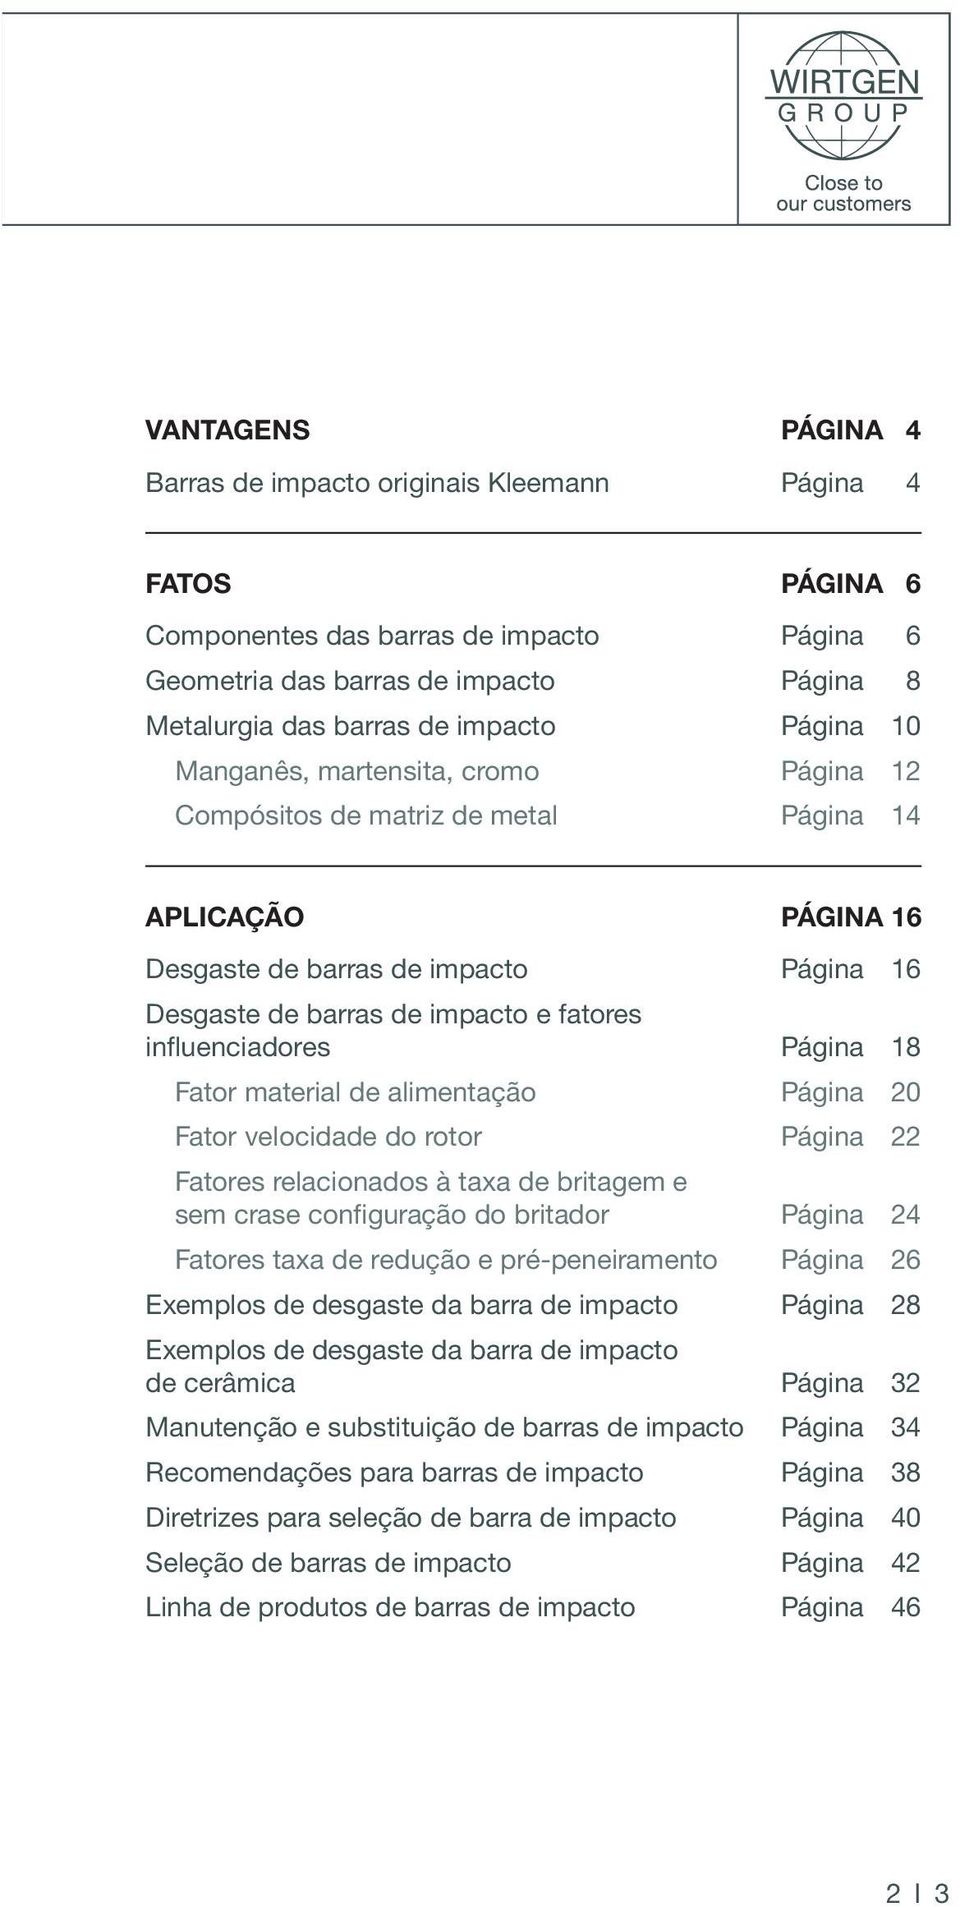 influenciadores Página 18 Fator material de alimentação Página 20 Fator velocidade do rotor Página 22 Fatores relacionados à taxa de britagem e sem crase configuração do britador Página 24 Fatores